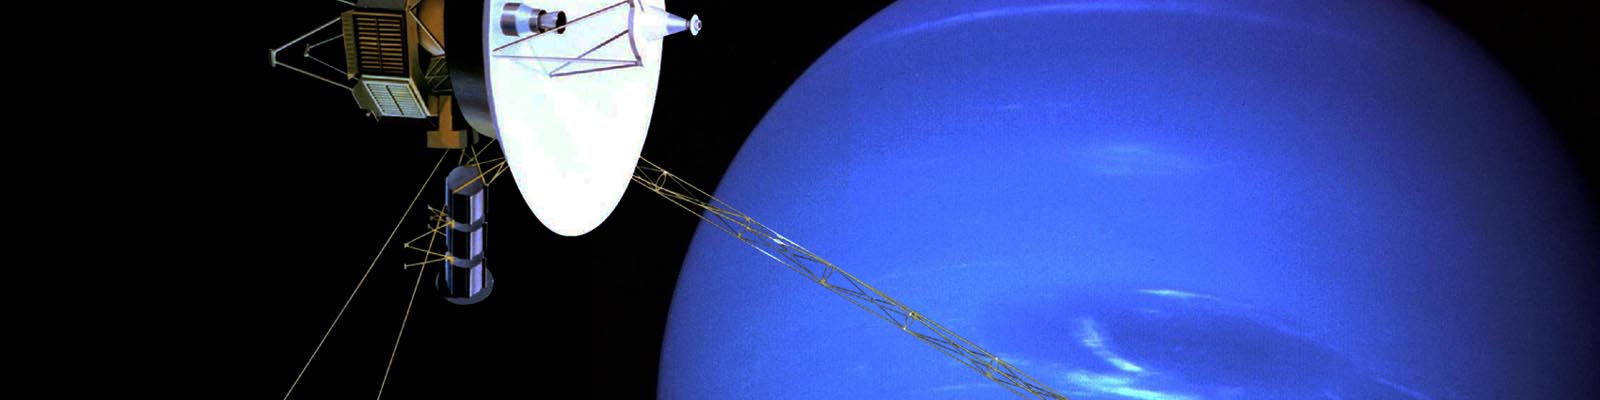 La sonde Voyager passe devant la planète Neptune